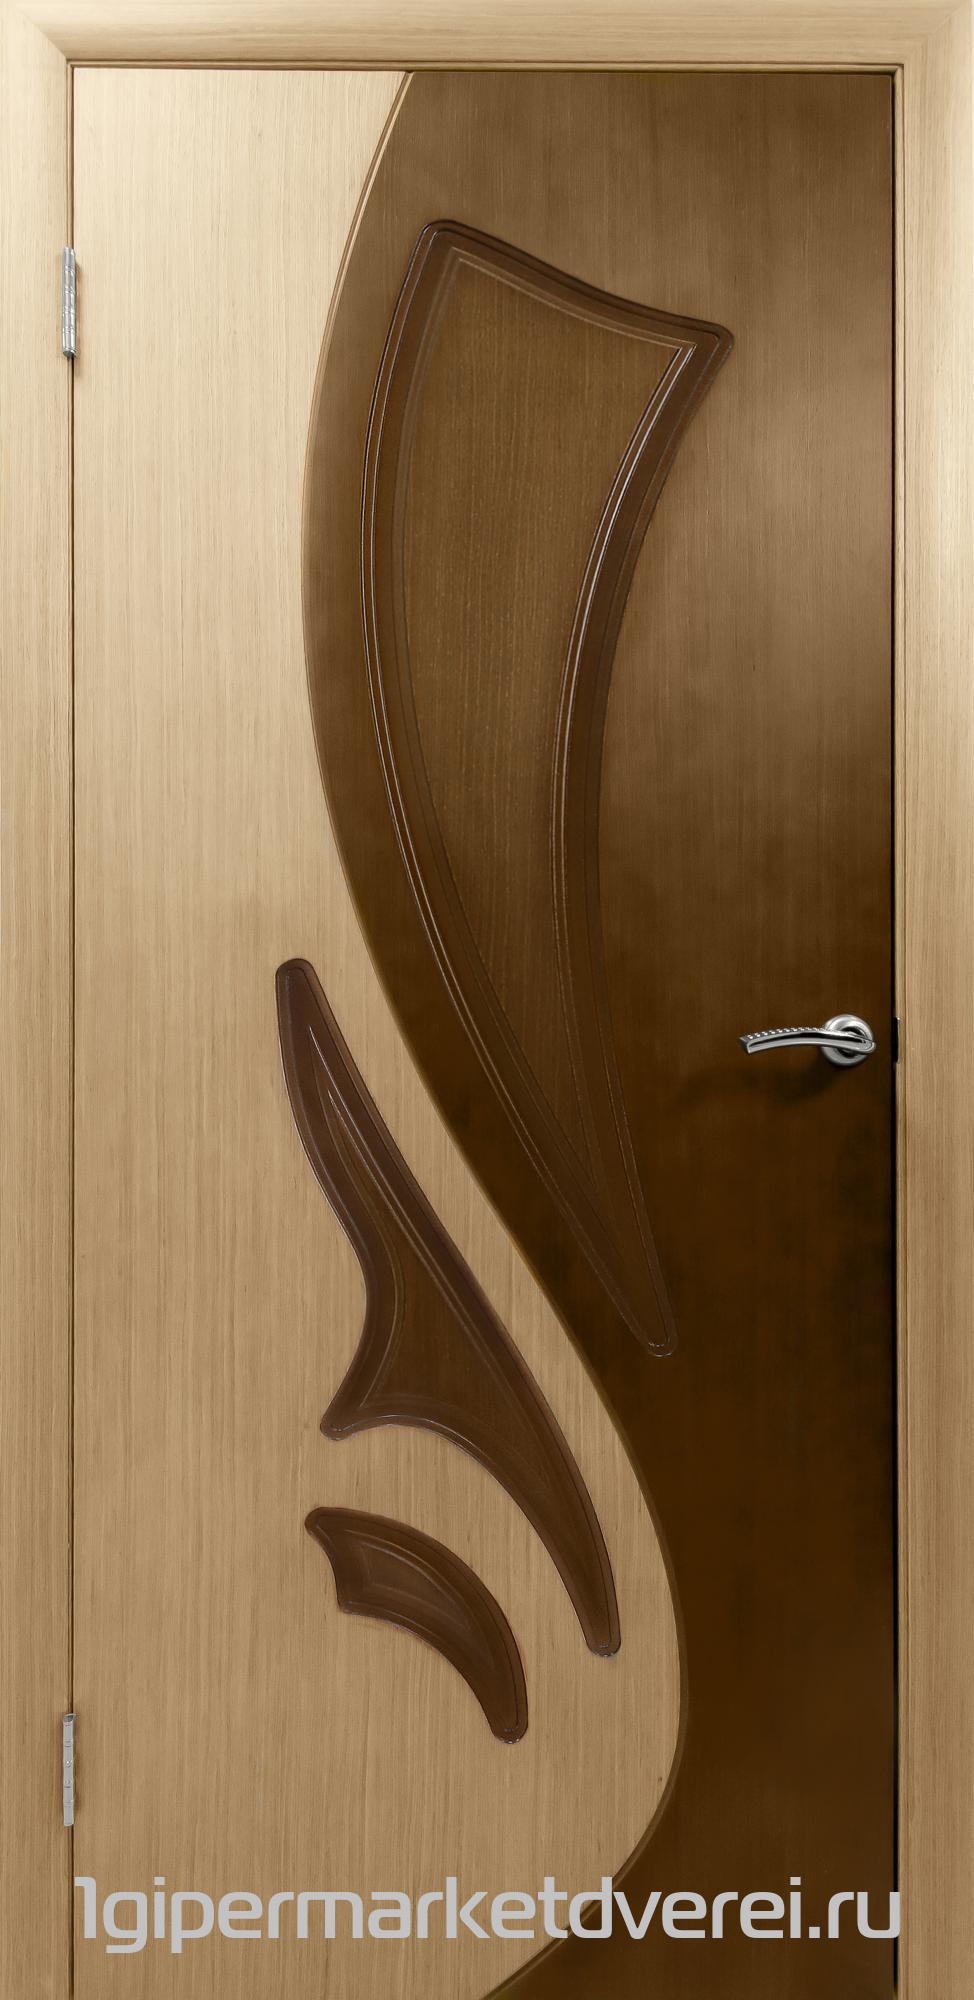 Межкомнатная дверь Лотос-1. Дверь межкомнатная Лотос ф. Межкомнатная дверь ДП Dim i-6 в интерьере. Межкомнатные двери Лотос в Энгельсе. Артель двери